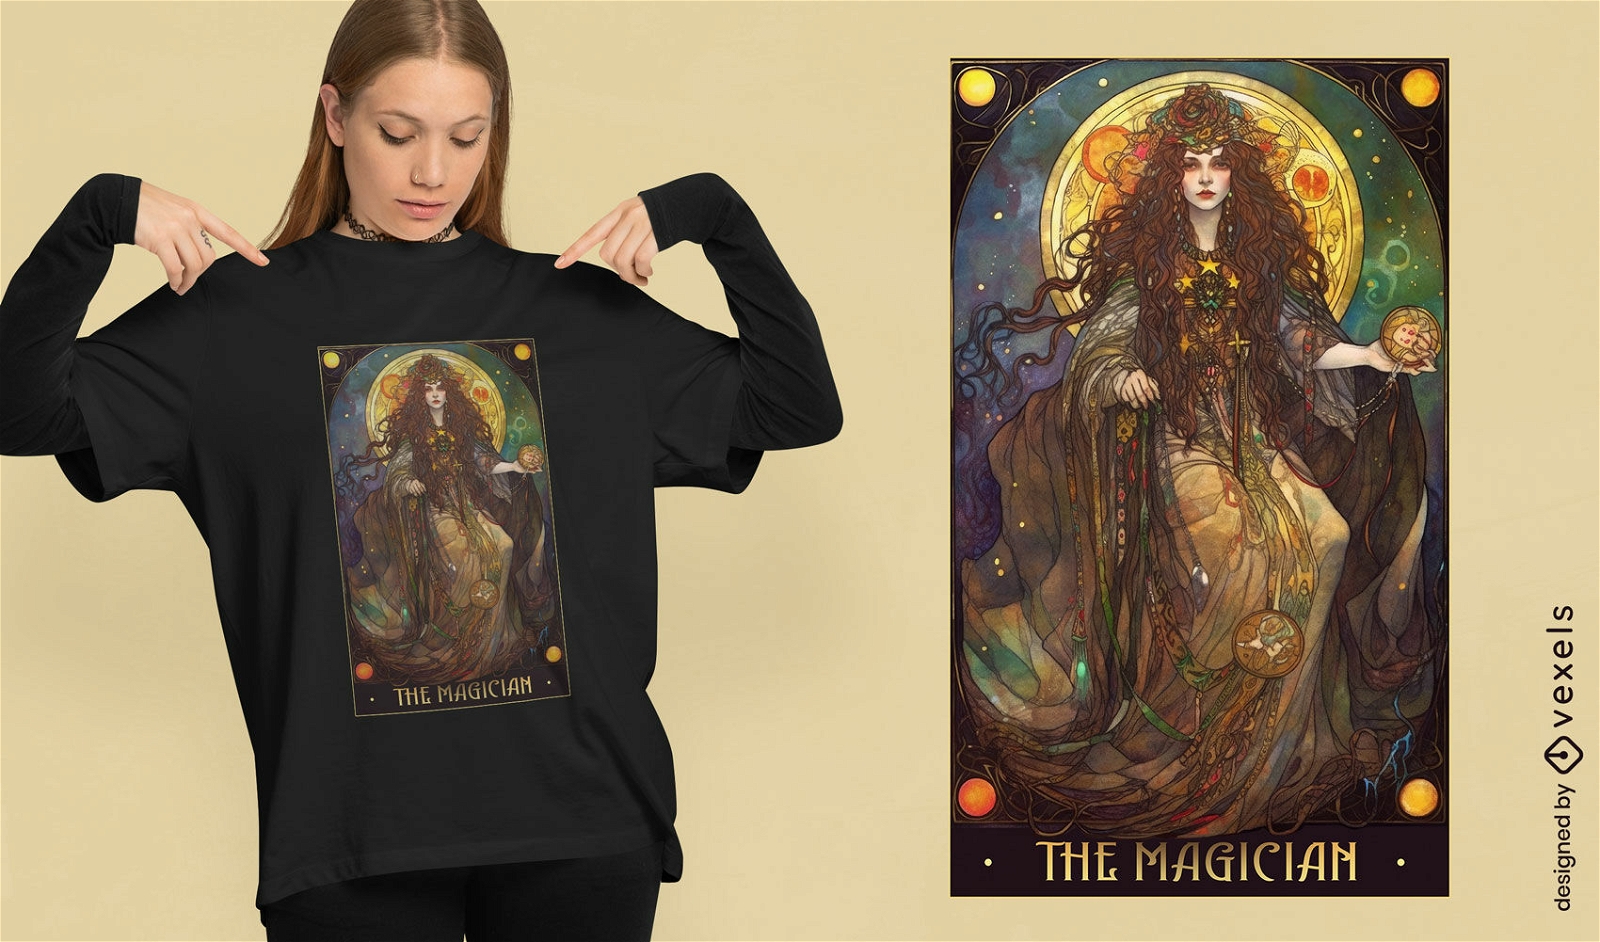 Tarot card magician t-shirt design